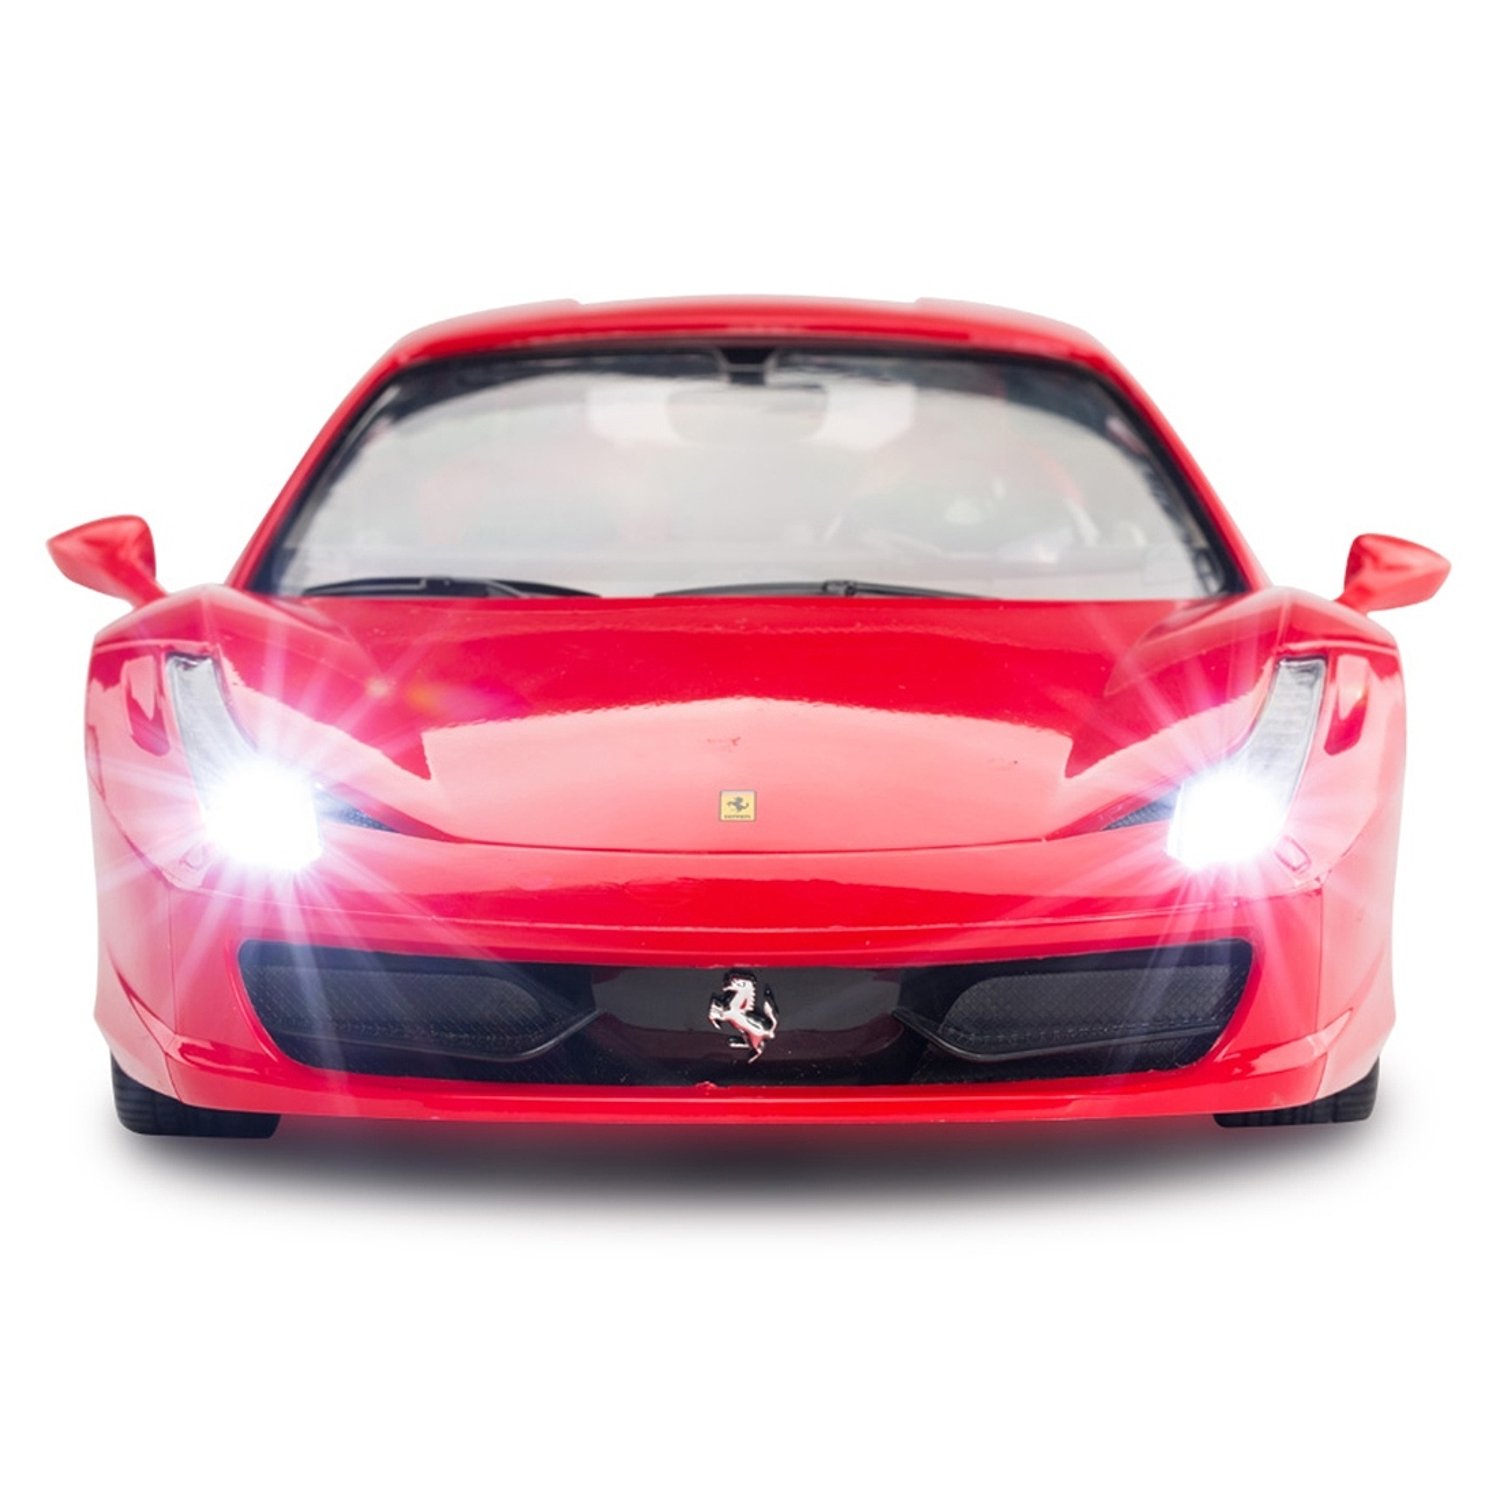 Машинка на радиоуправлении Rastar Ferrari 458 Italia 1:14 Красная